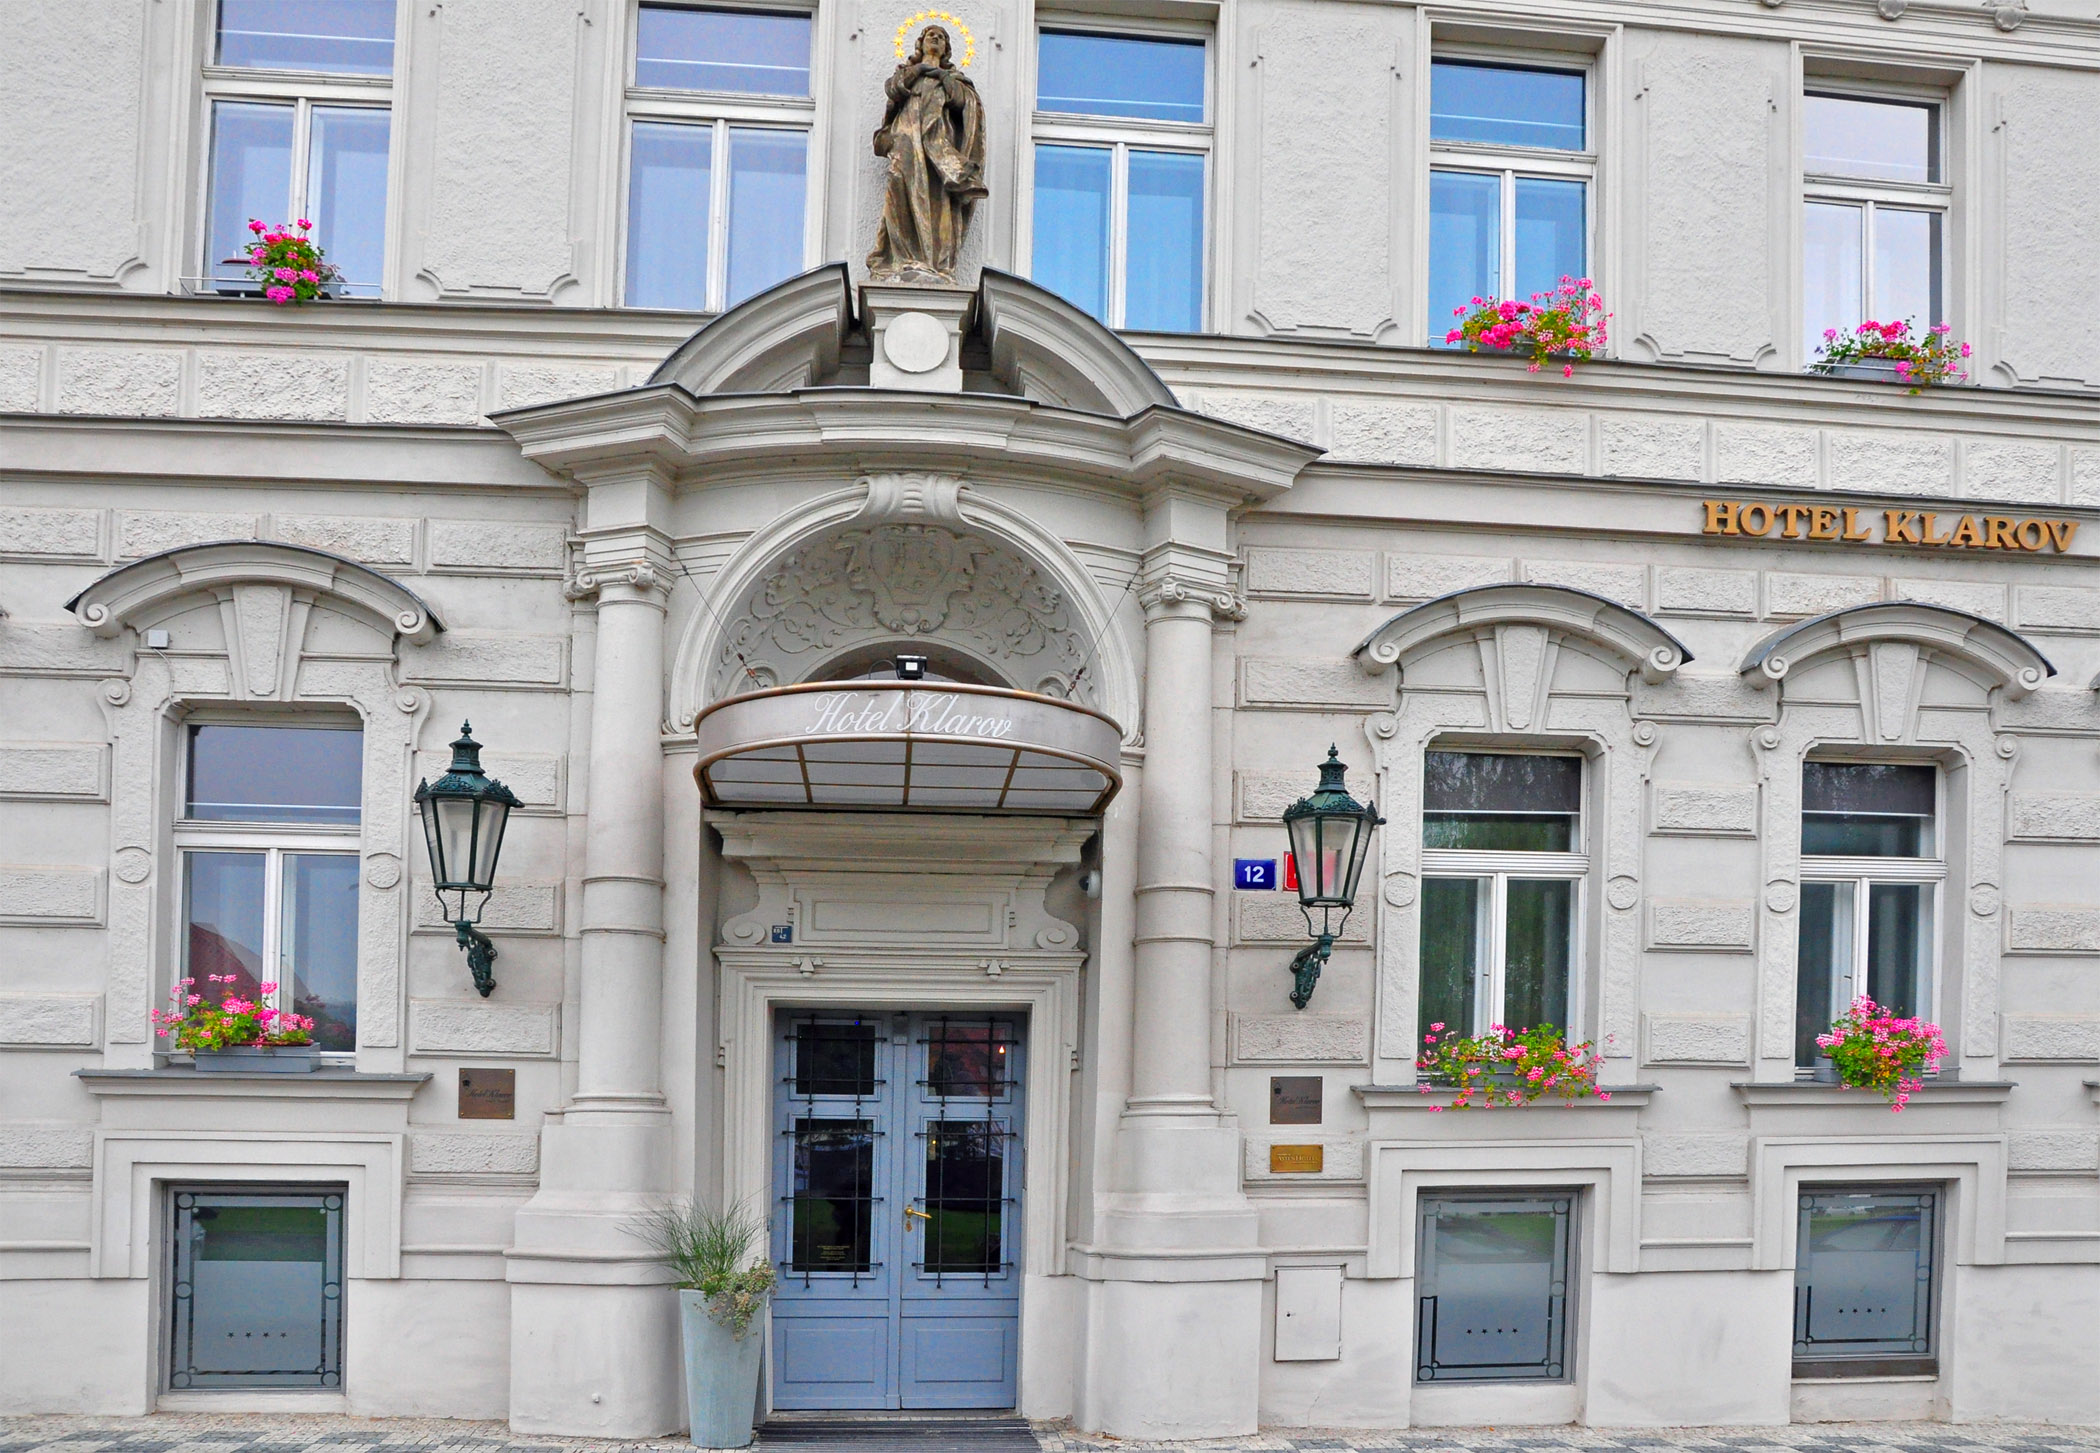 2. Hotel Klarov